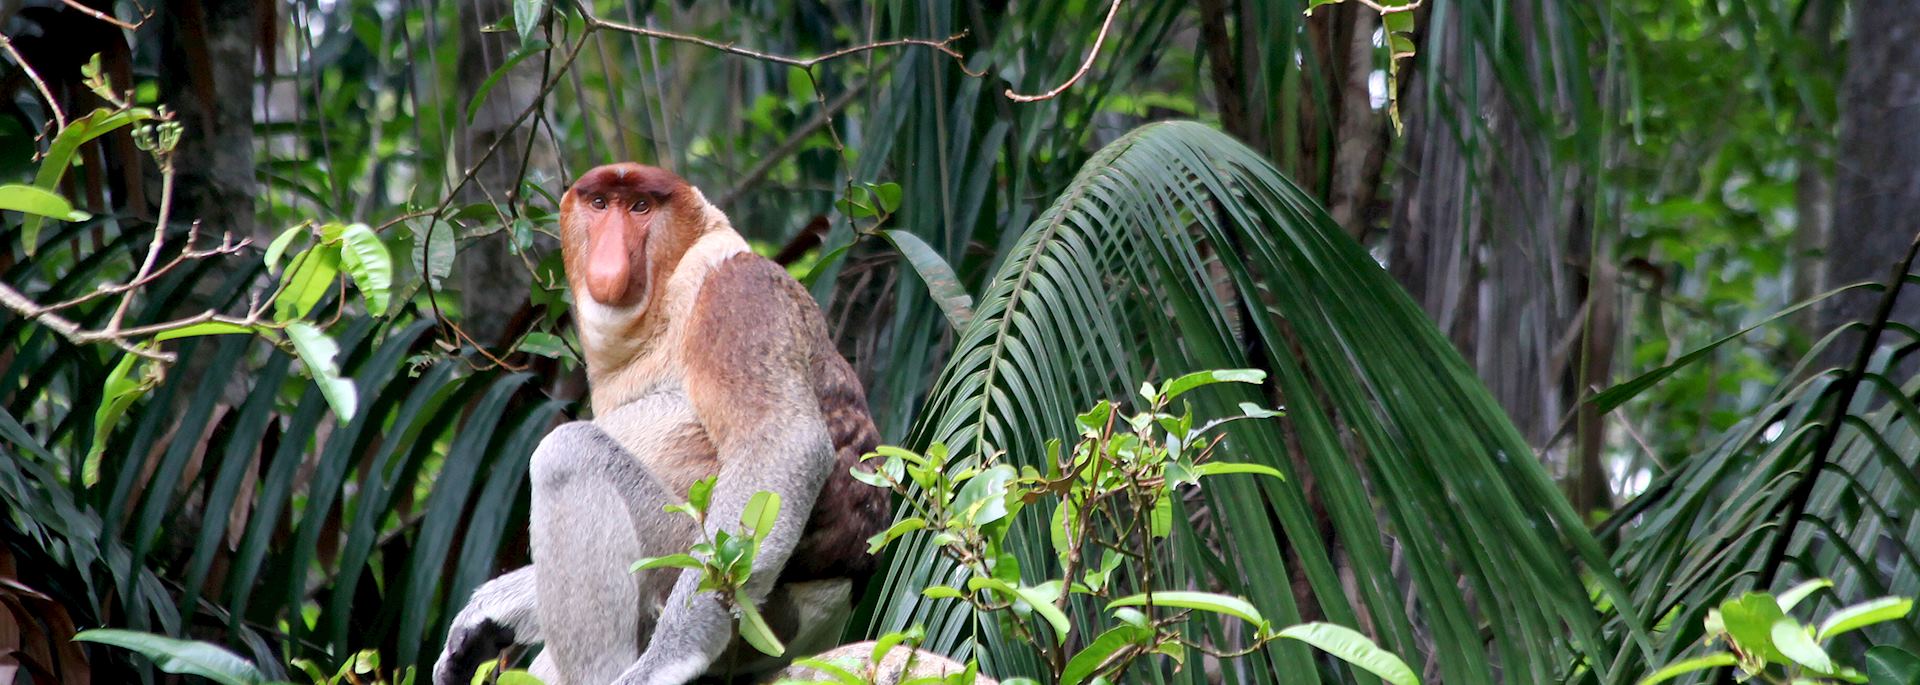 Proboscis monkey, Borneo